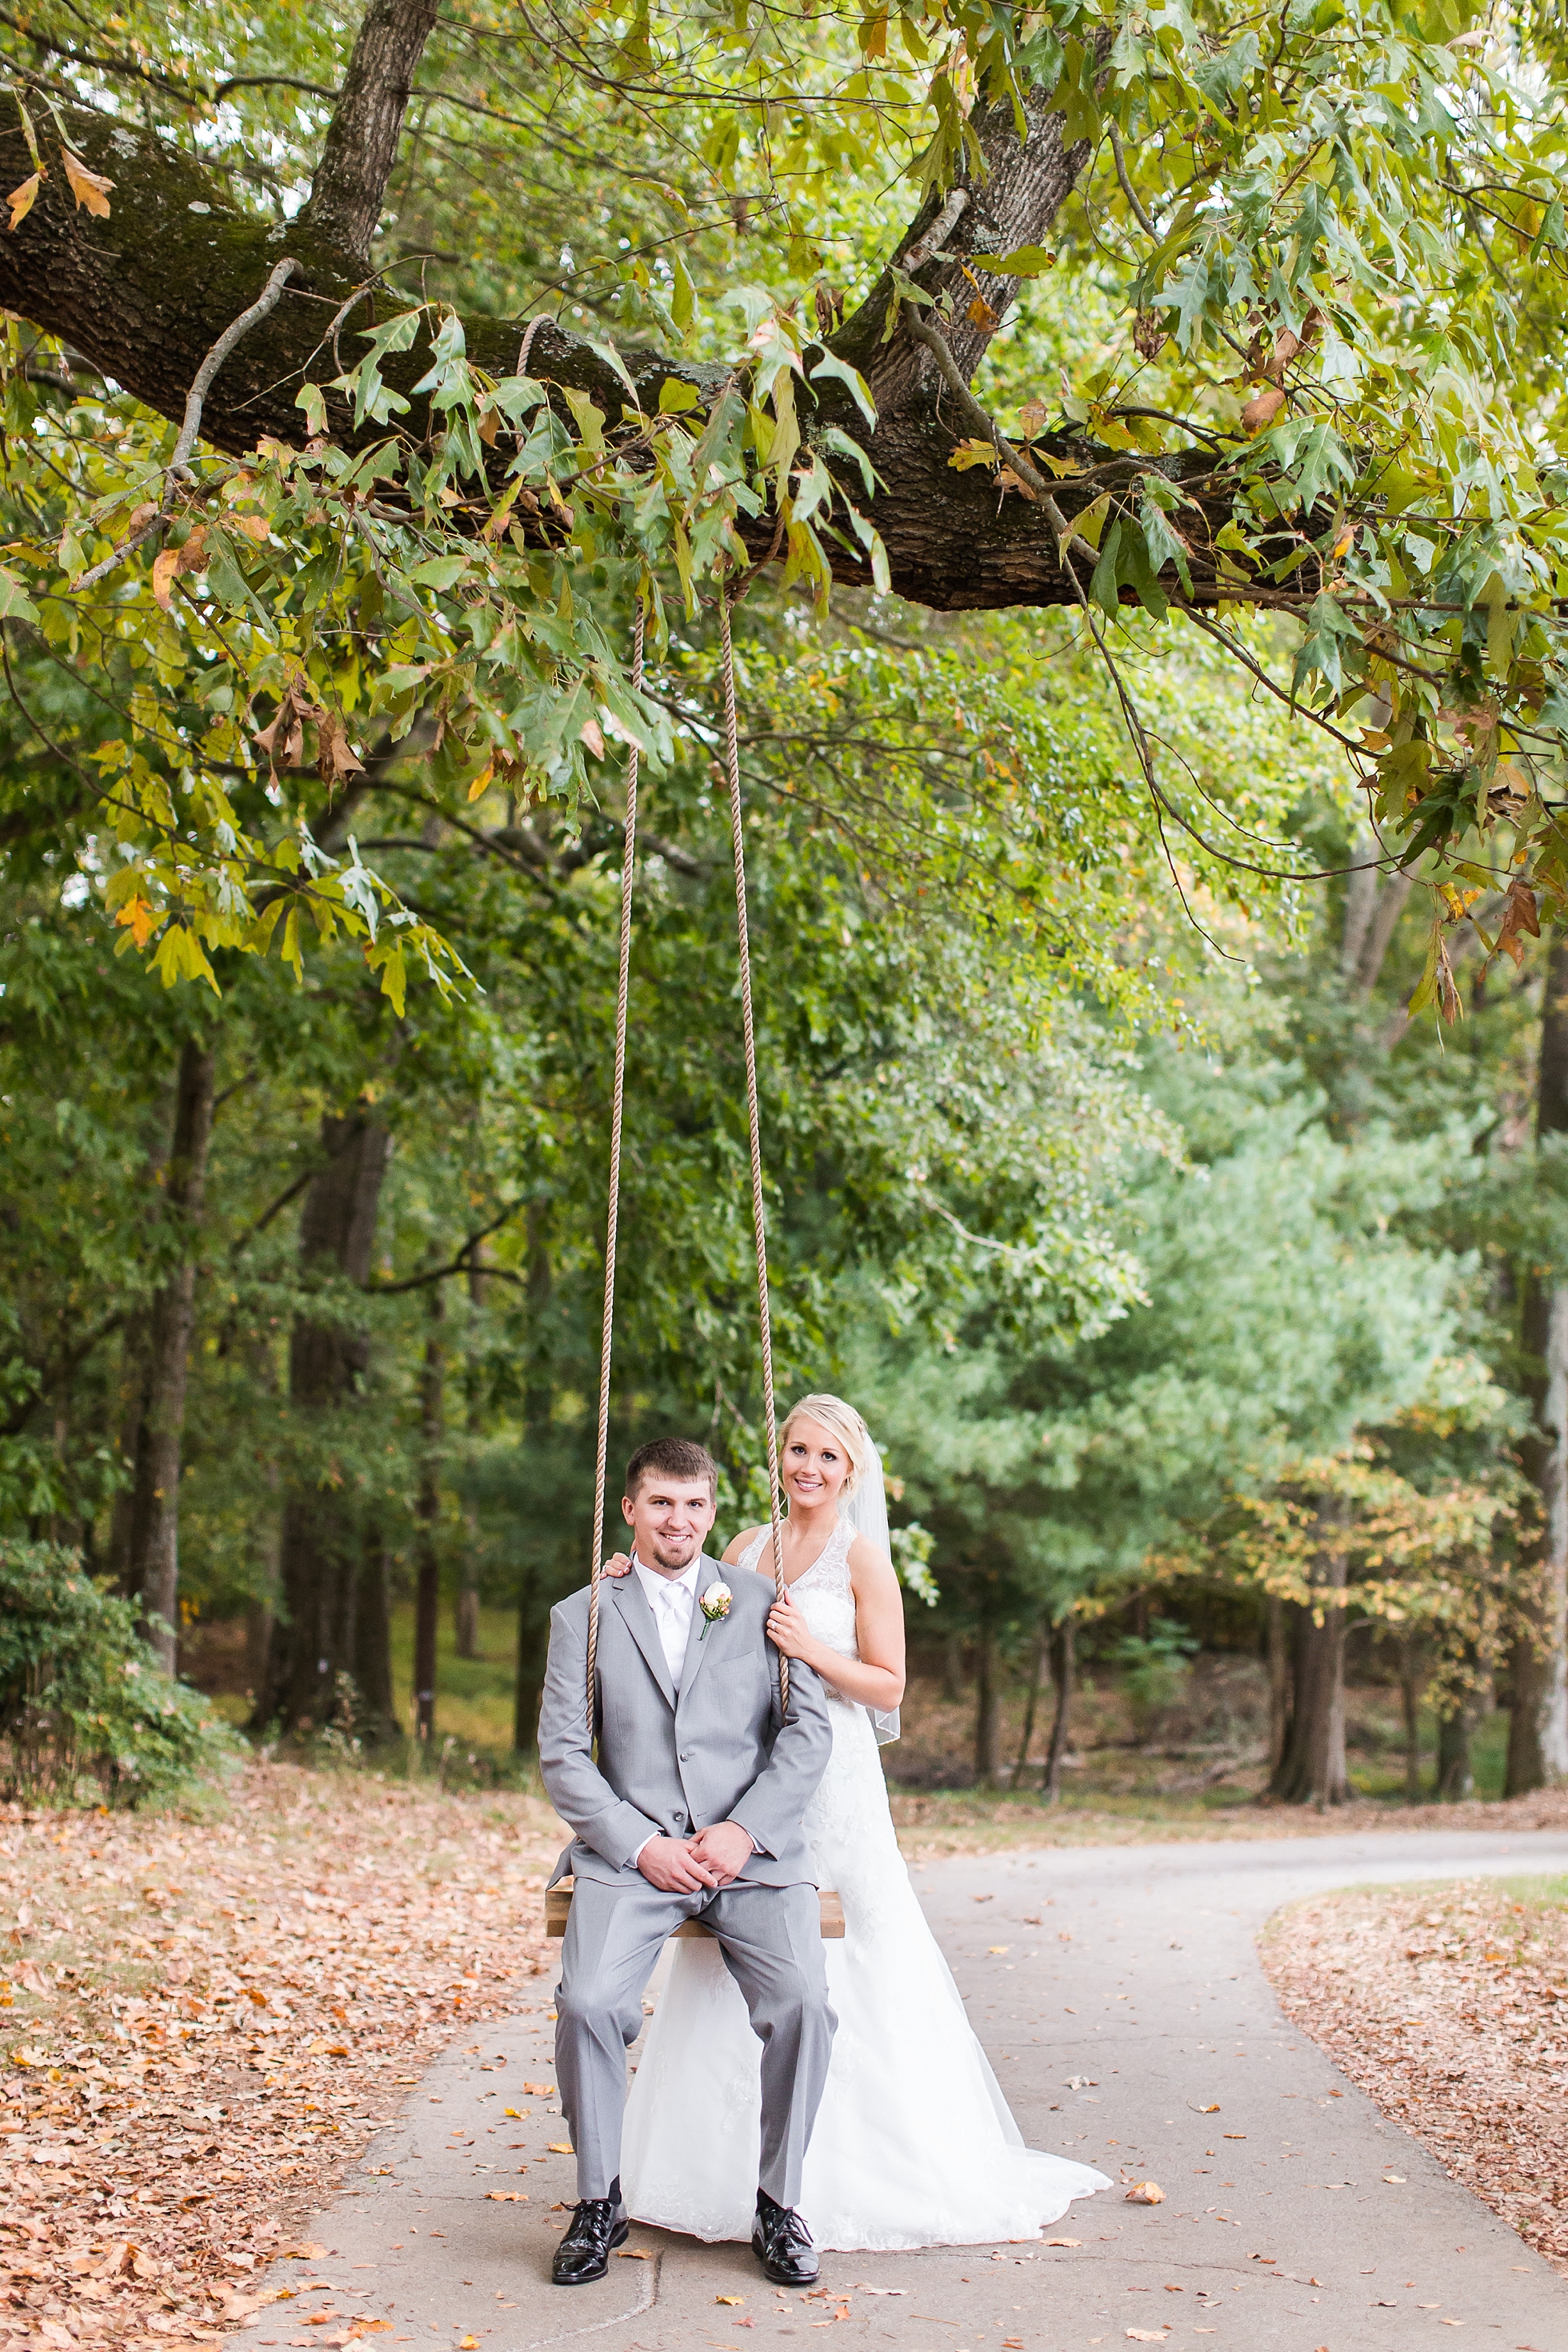 rope swing bride groom wedding photos